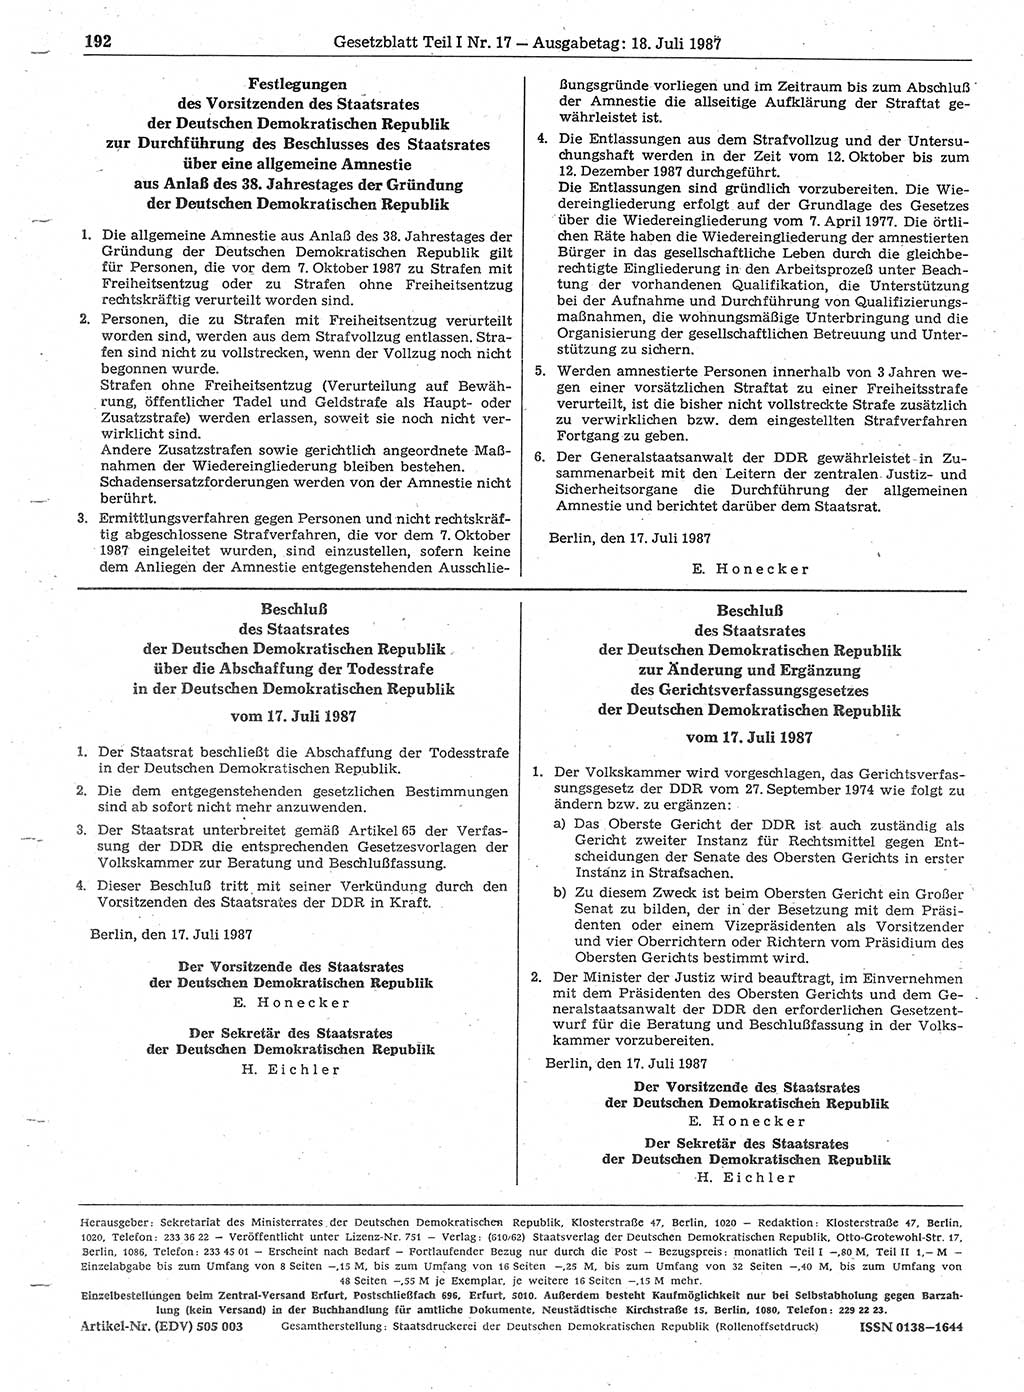 Gesetzblatt (GBl.) der Deutschen Demokratischen Republik (DDR) Teil Ⅰ 1987, Seite 192 (GBl. DDR Ⅰ 1987, S. 192)